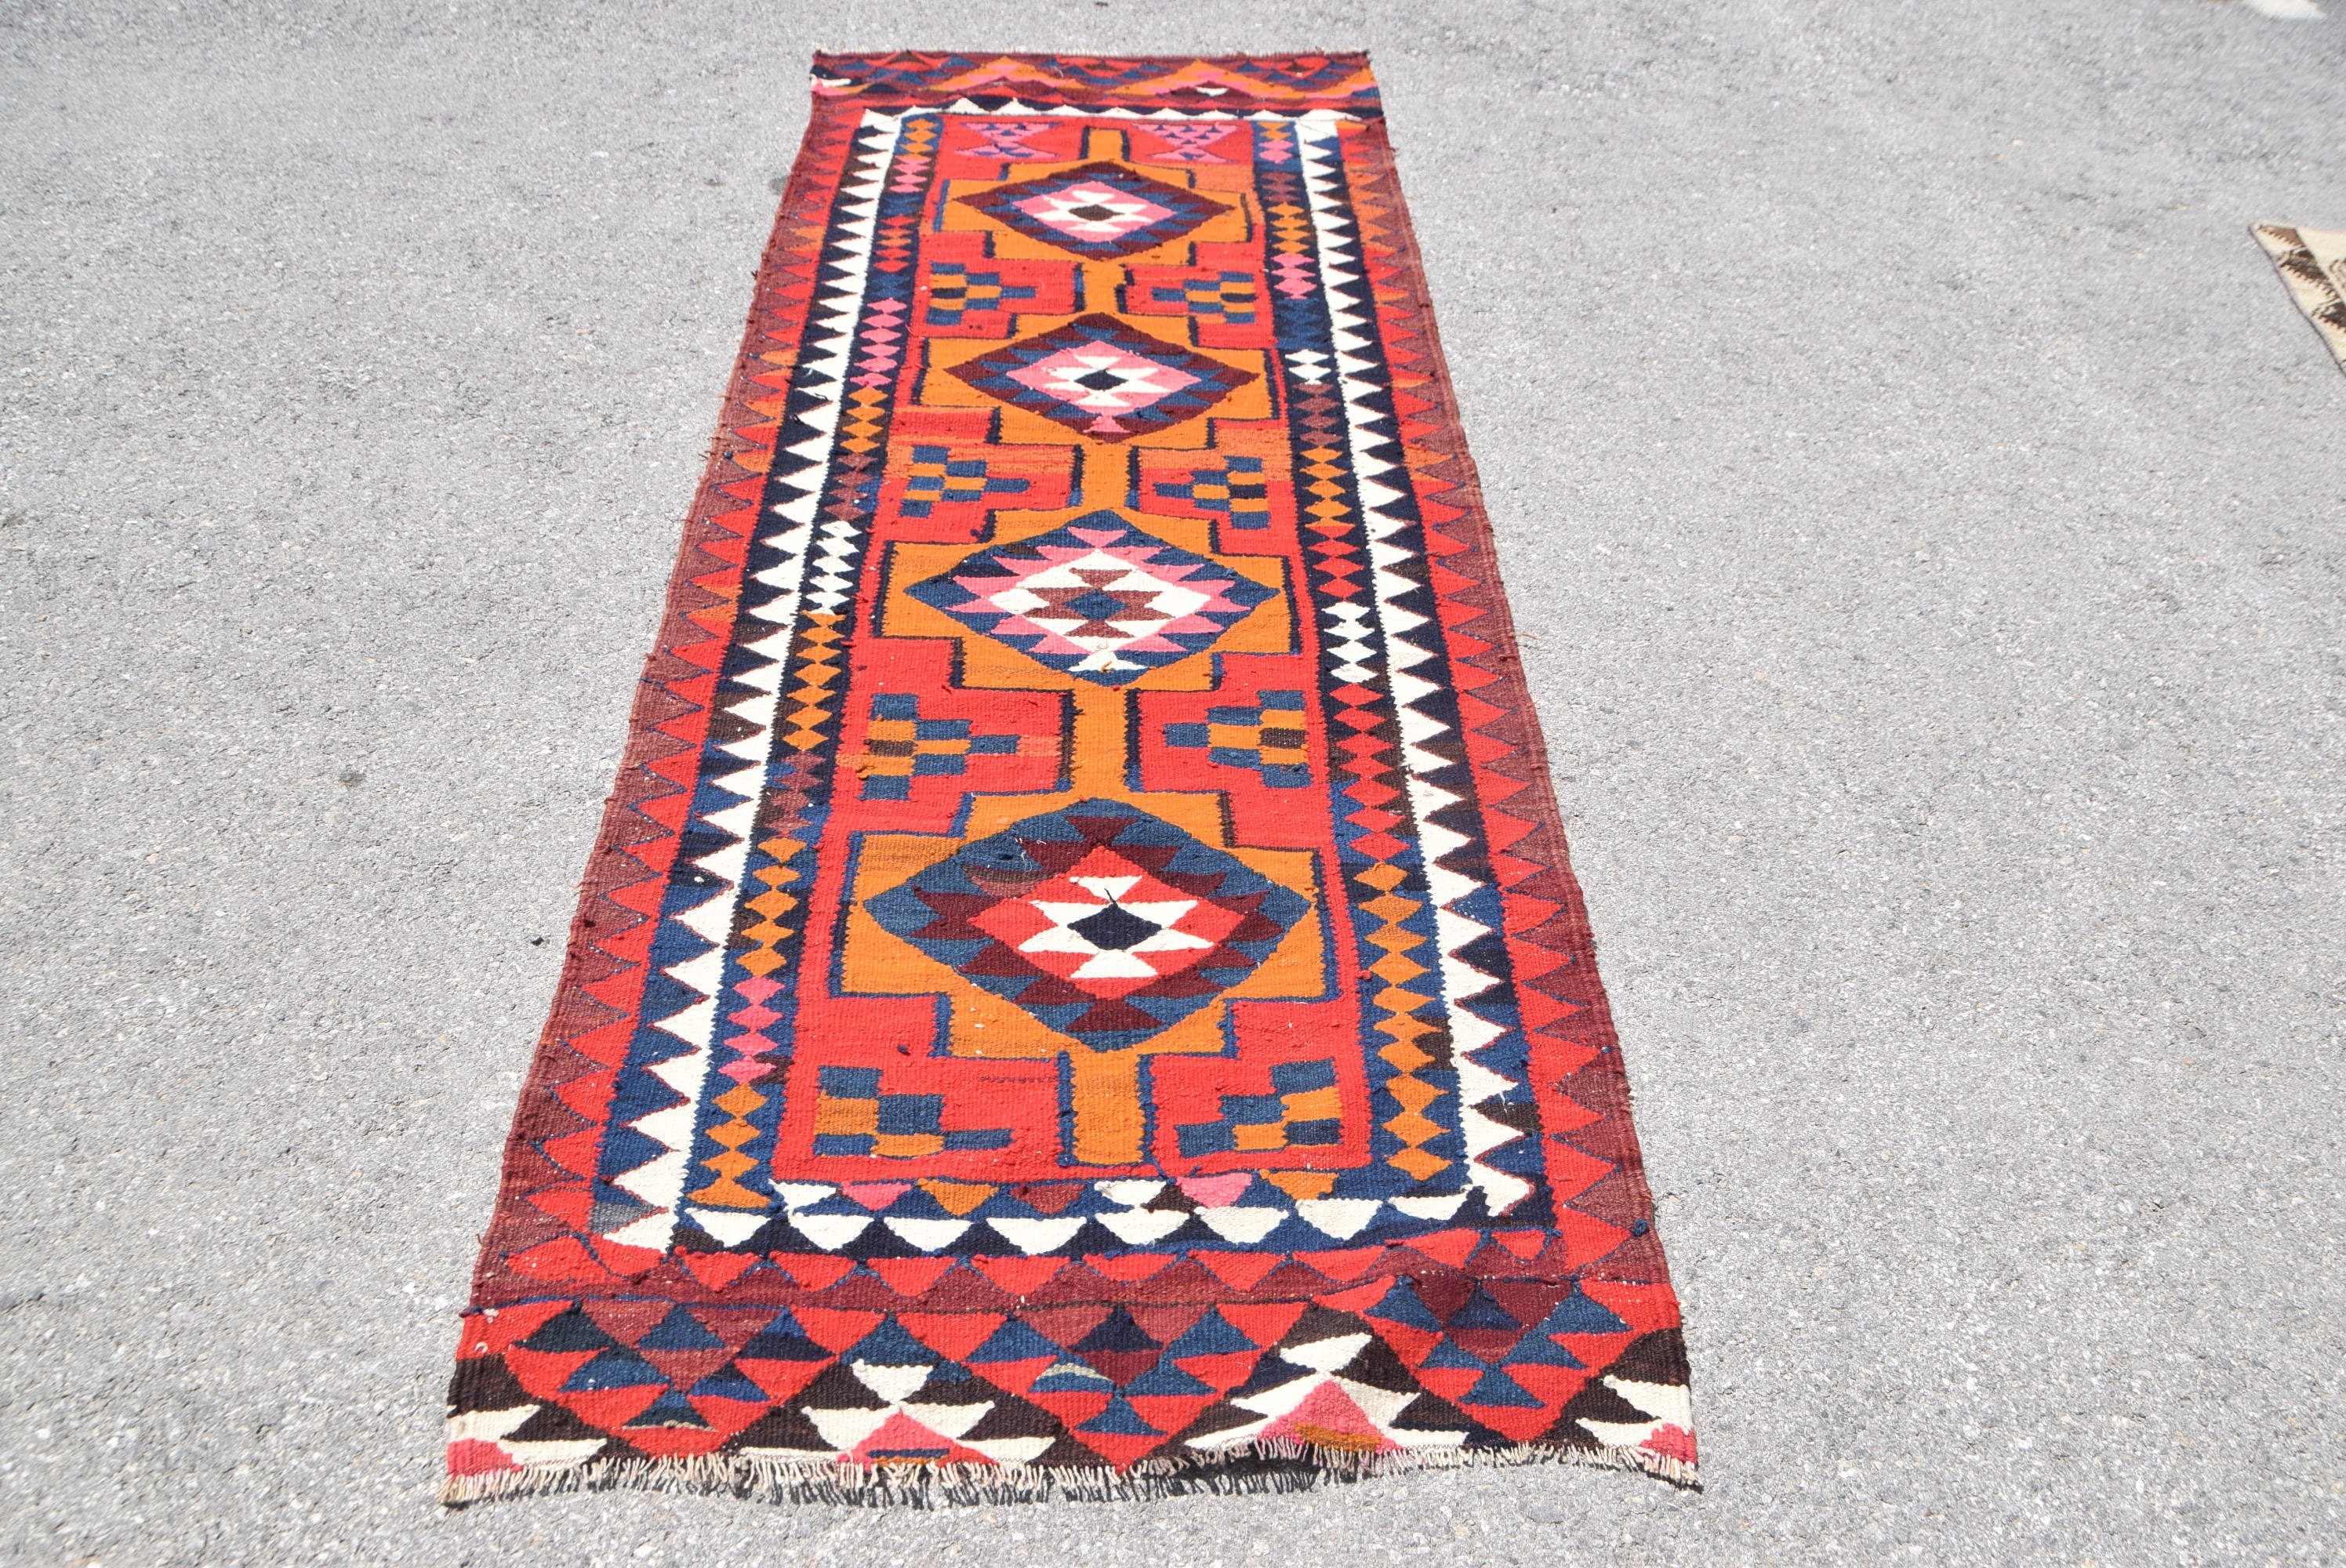 3.1x8.9 ft Runner Rug, Anatolian Rug, Hallway Rug, Rugs for Hallway, Floor Rug, Abstract Rug, Vintage Rug, Red Moroccan Rug, Turkish Rugs